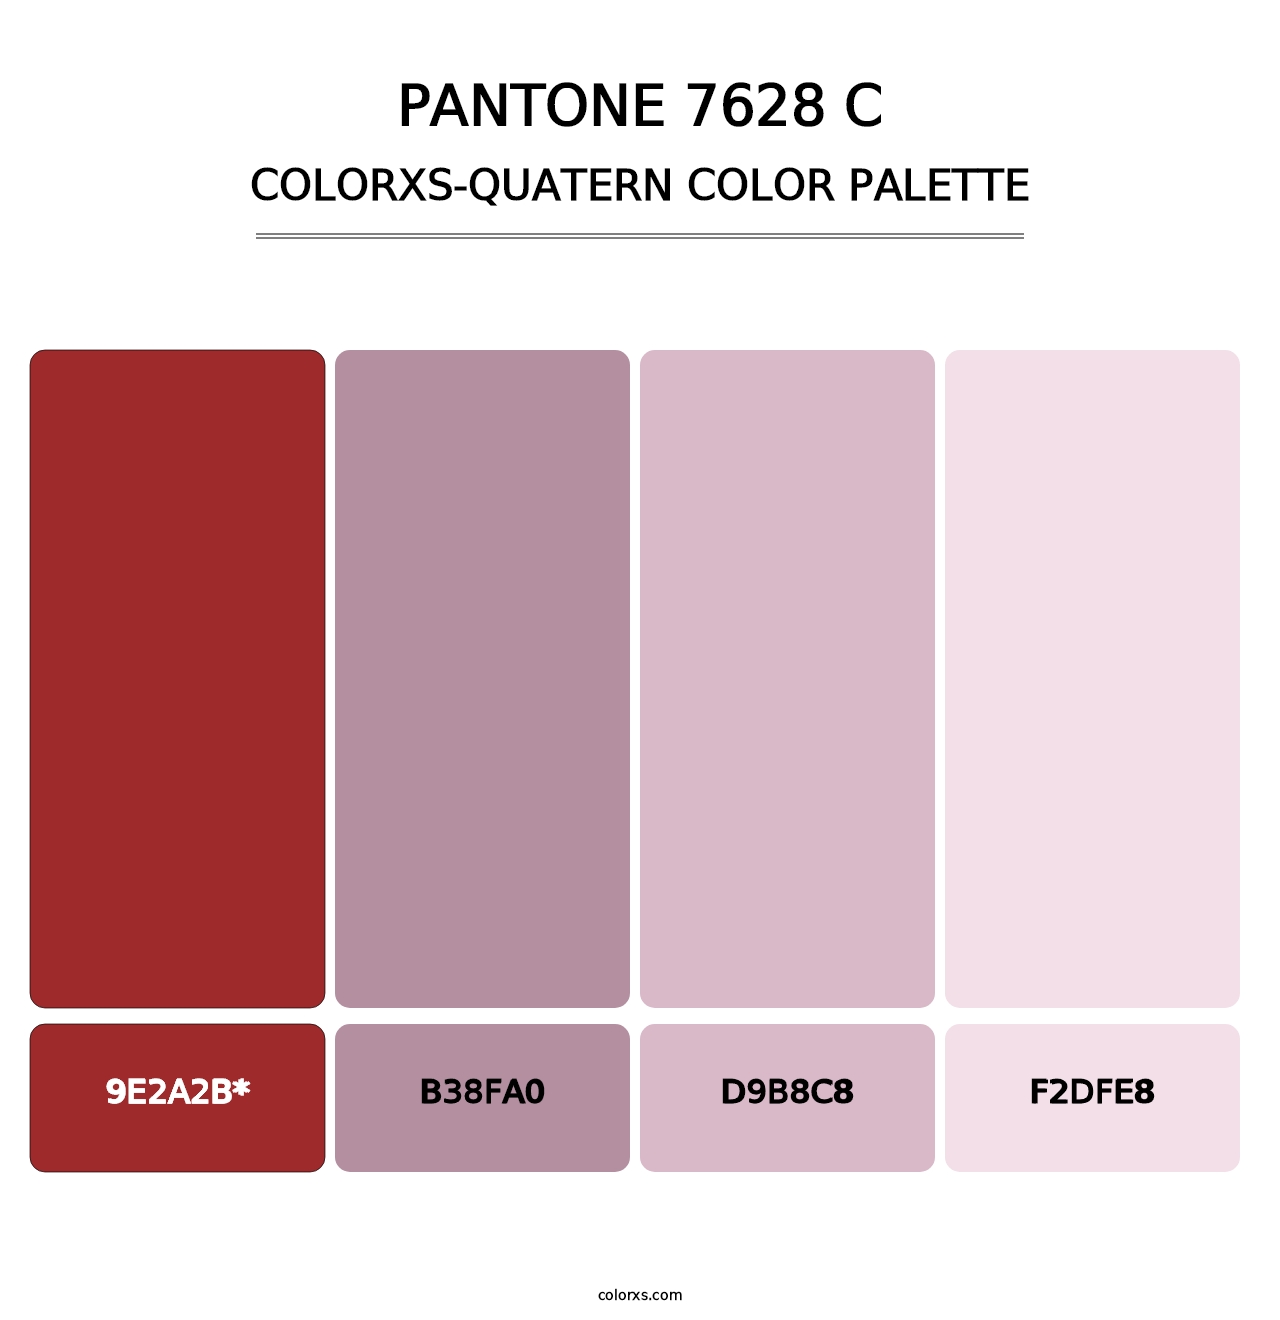 PANTONE 7628 C - Colorxs Quatern Palette